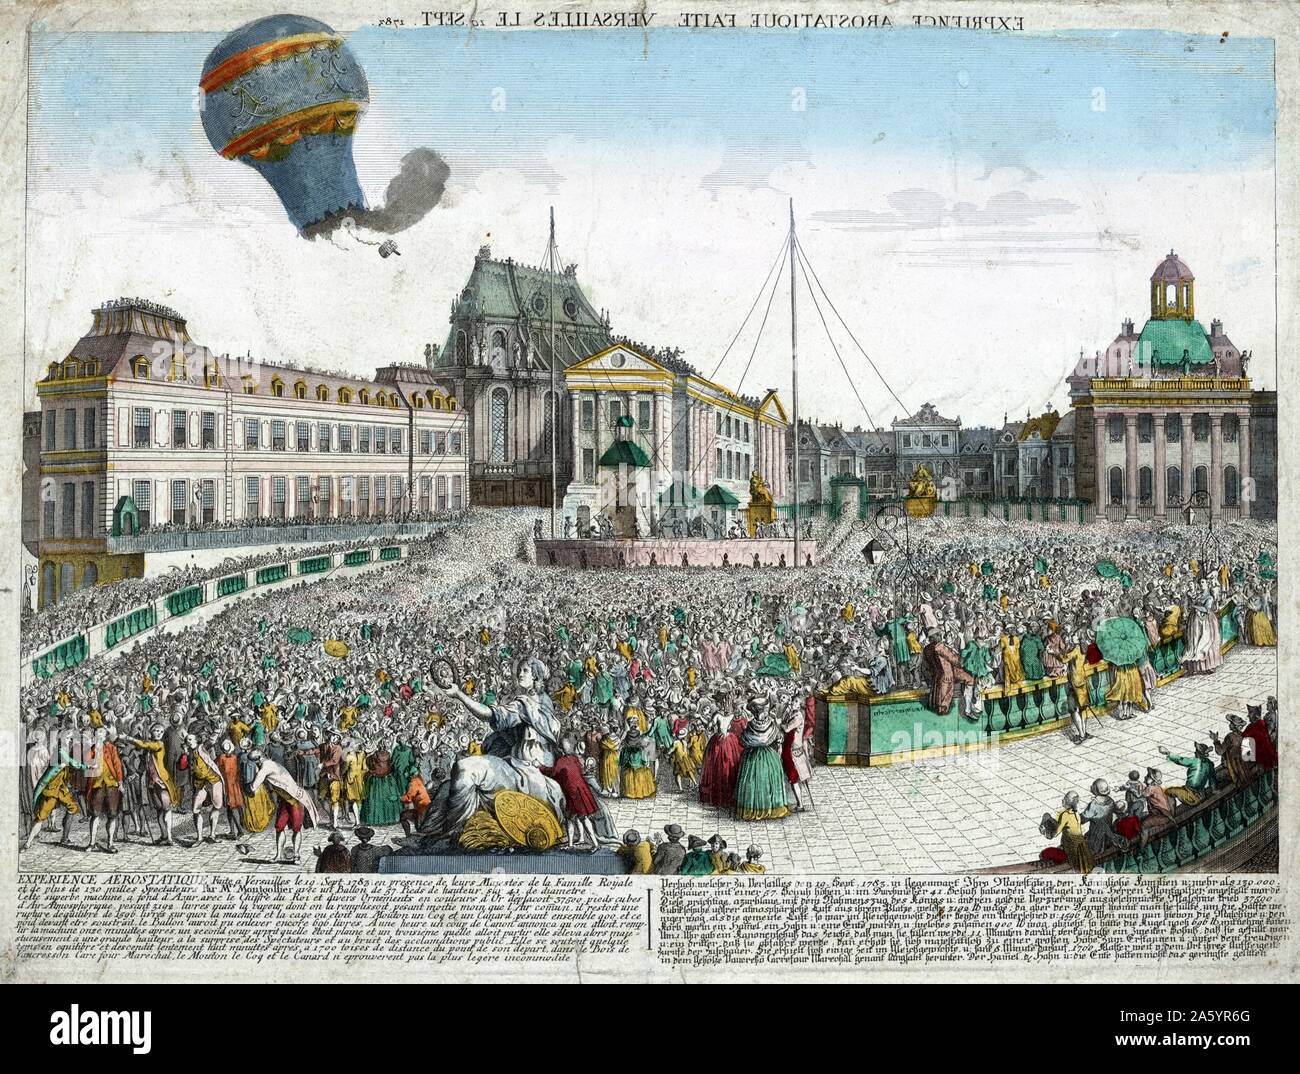 Handkolorierten Radierung Darstellung der Heißluftballons, veröffentlicht durch die Gebrüder Montgolfier, aufsteigend aus das Schloss von Versailles, vor der königlichen Familie. Die ersten Passagiere enthalten ein Schaf, Ente und Hahn. Vom Jahre 1783 Stockfoto